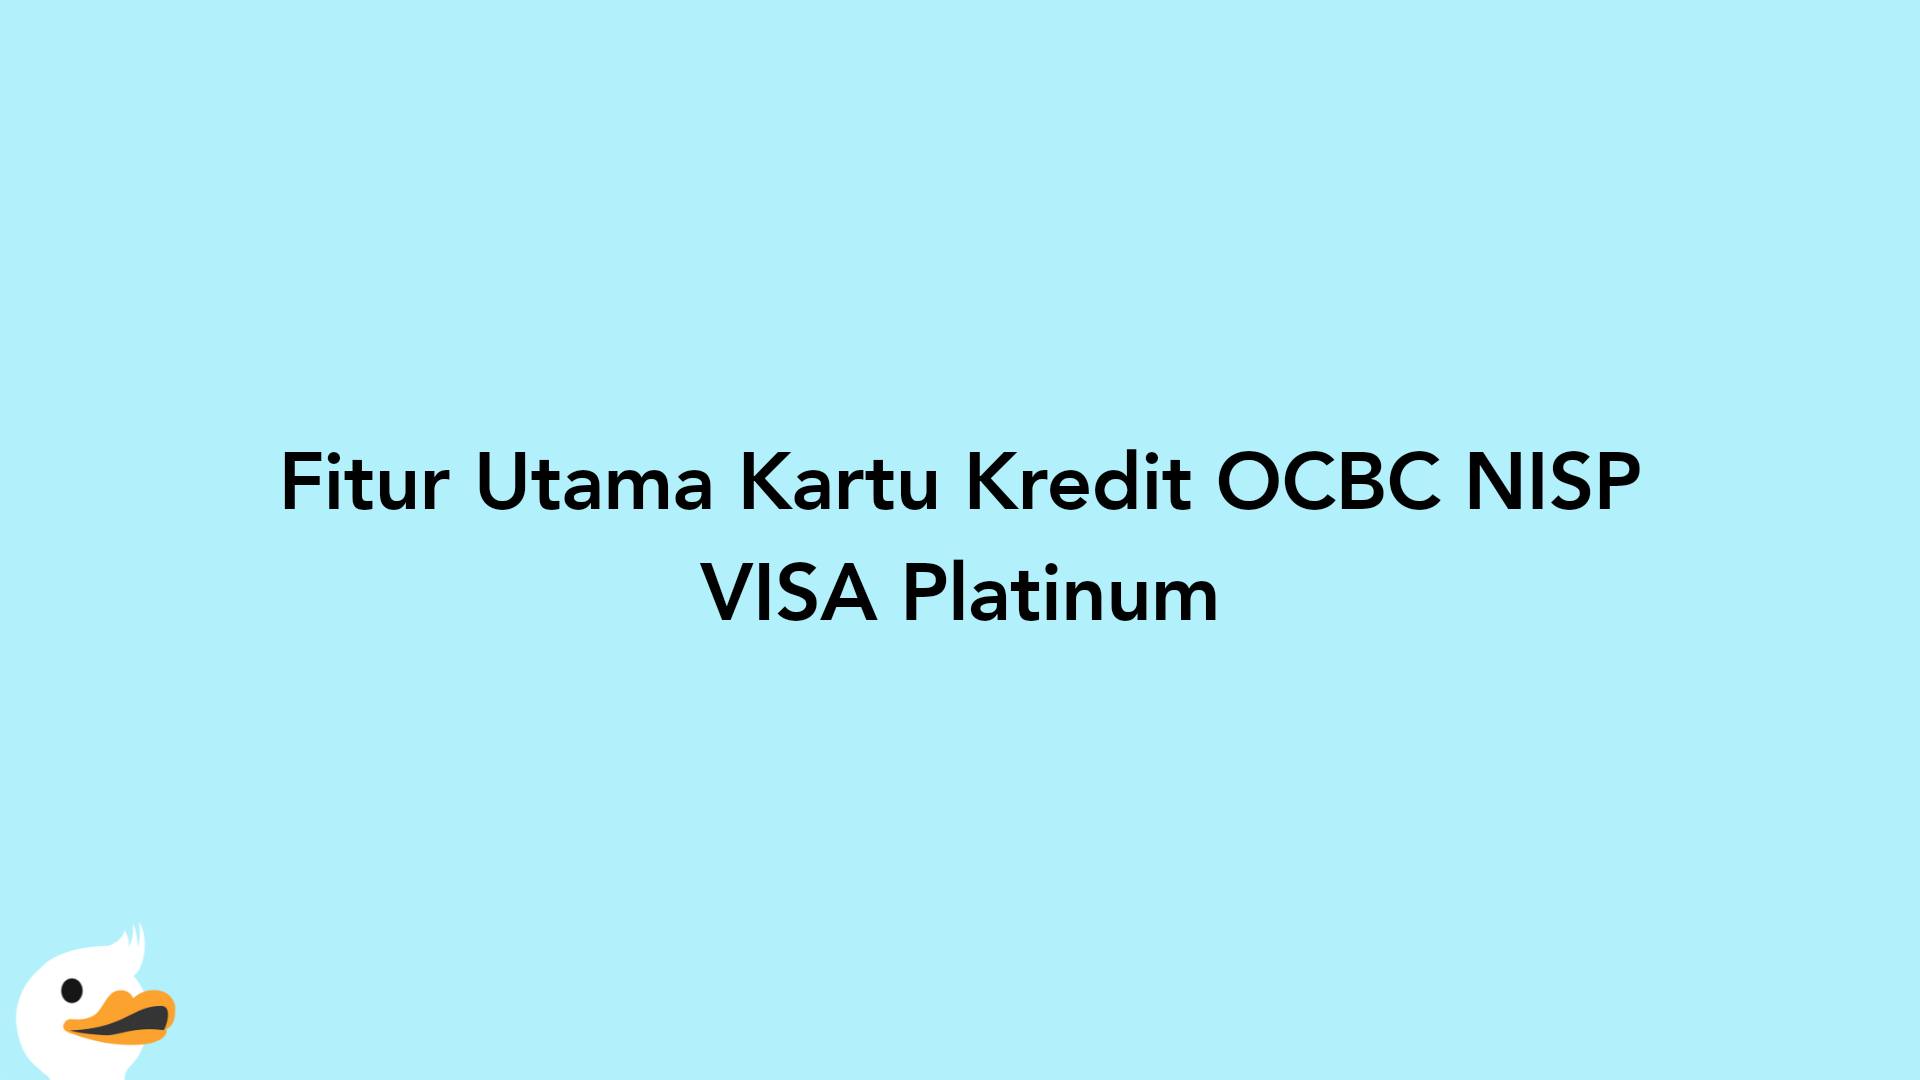 Fitur Utama Kartu Kredit OCBC NISP VISA Platinum